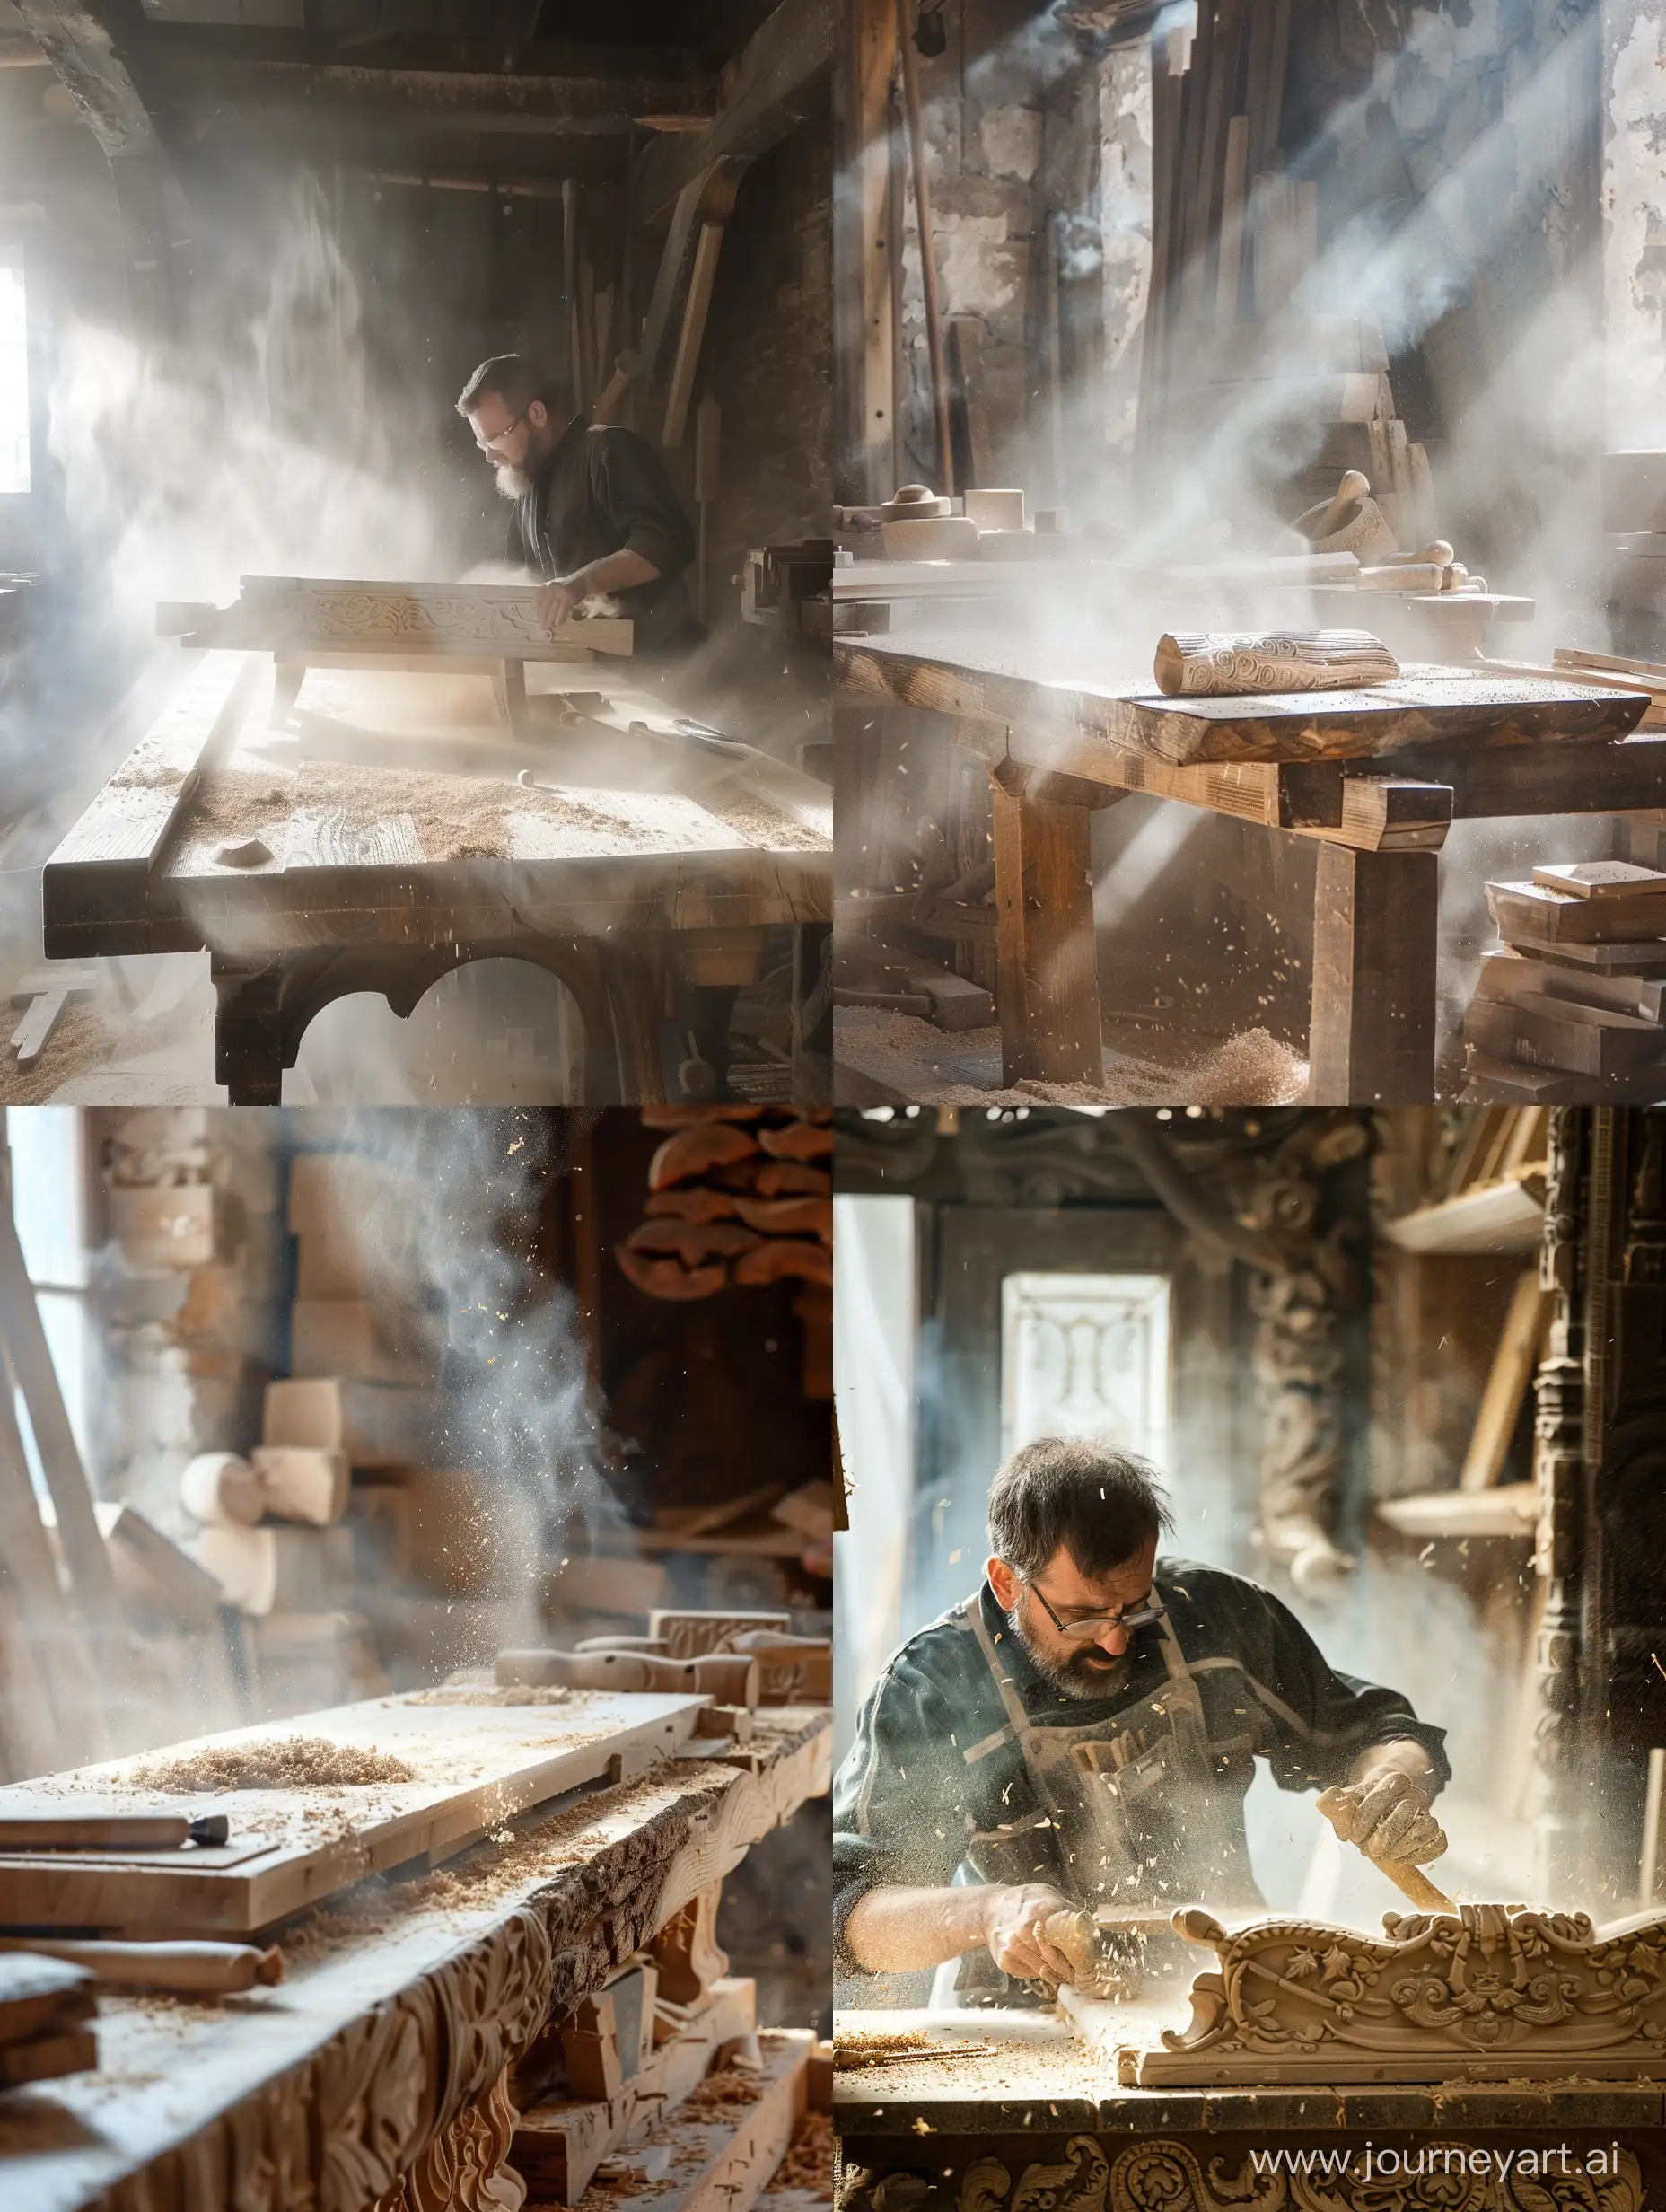 Столяр делает мебель из массива дуба в старинной столярной мастерской. Резная мебель инструменты верстак пыль туман опилки